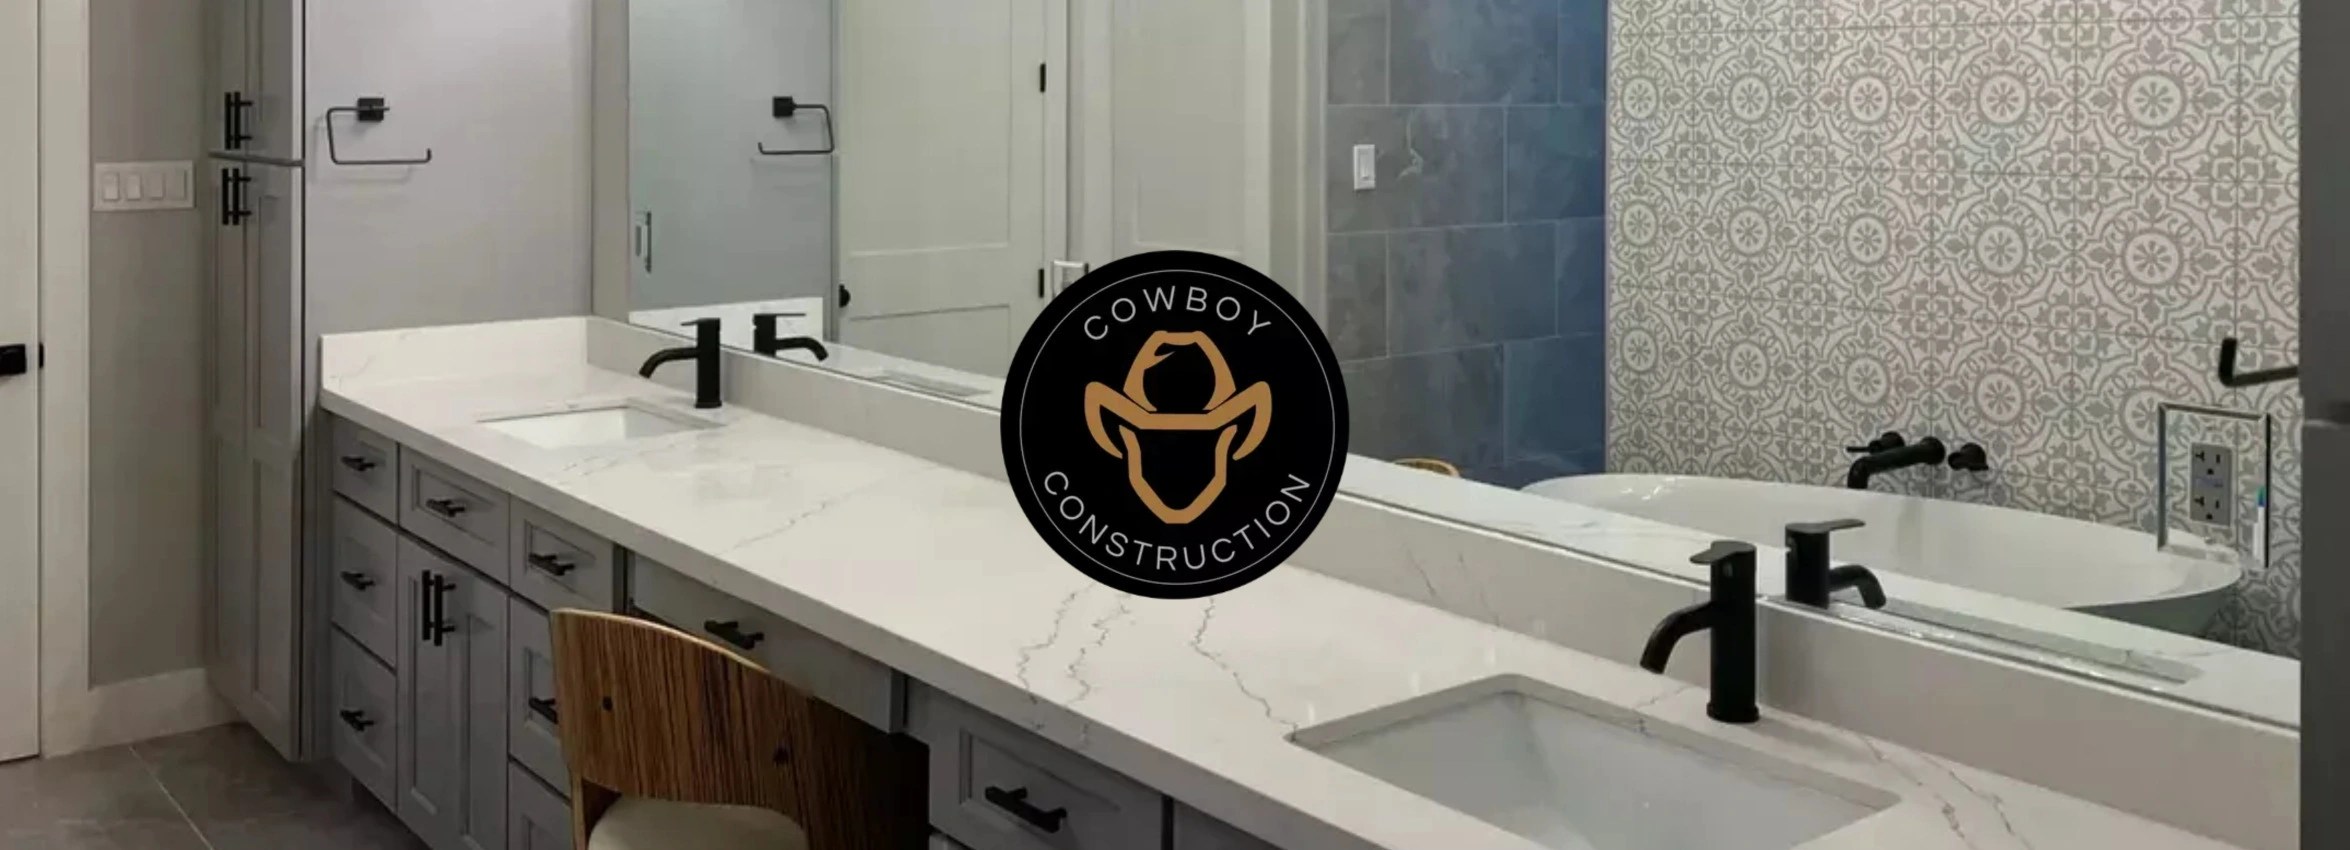 Cowboy-Construction_Desktop_ET